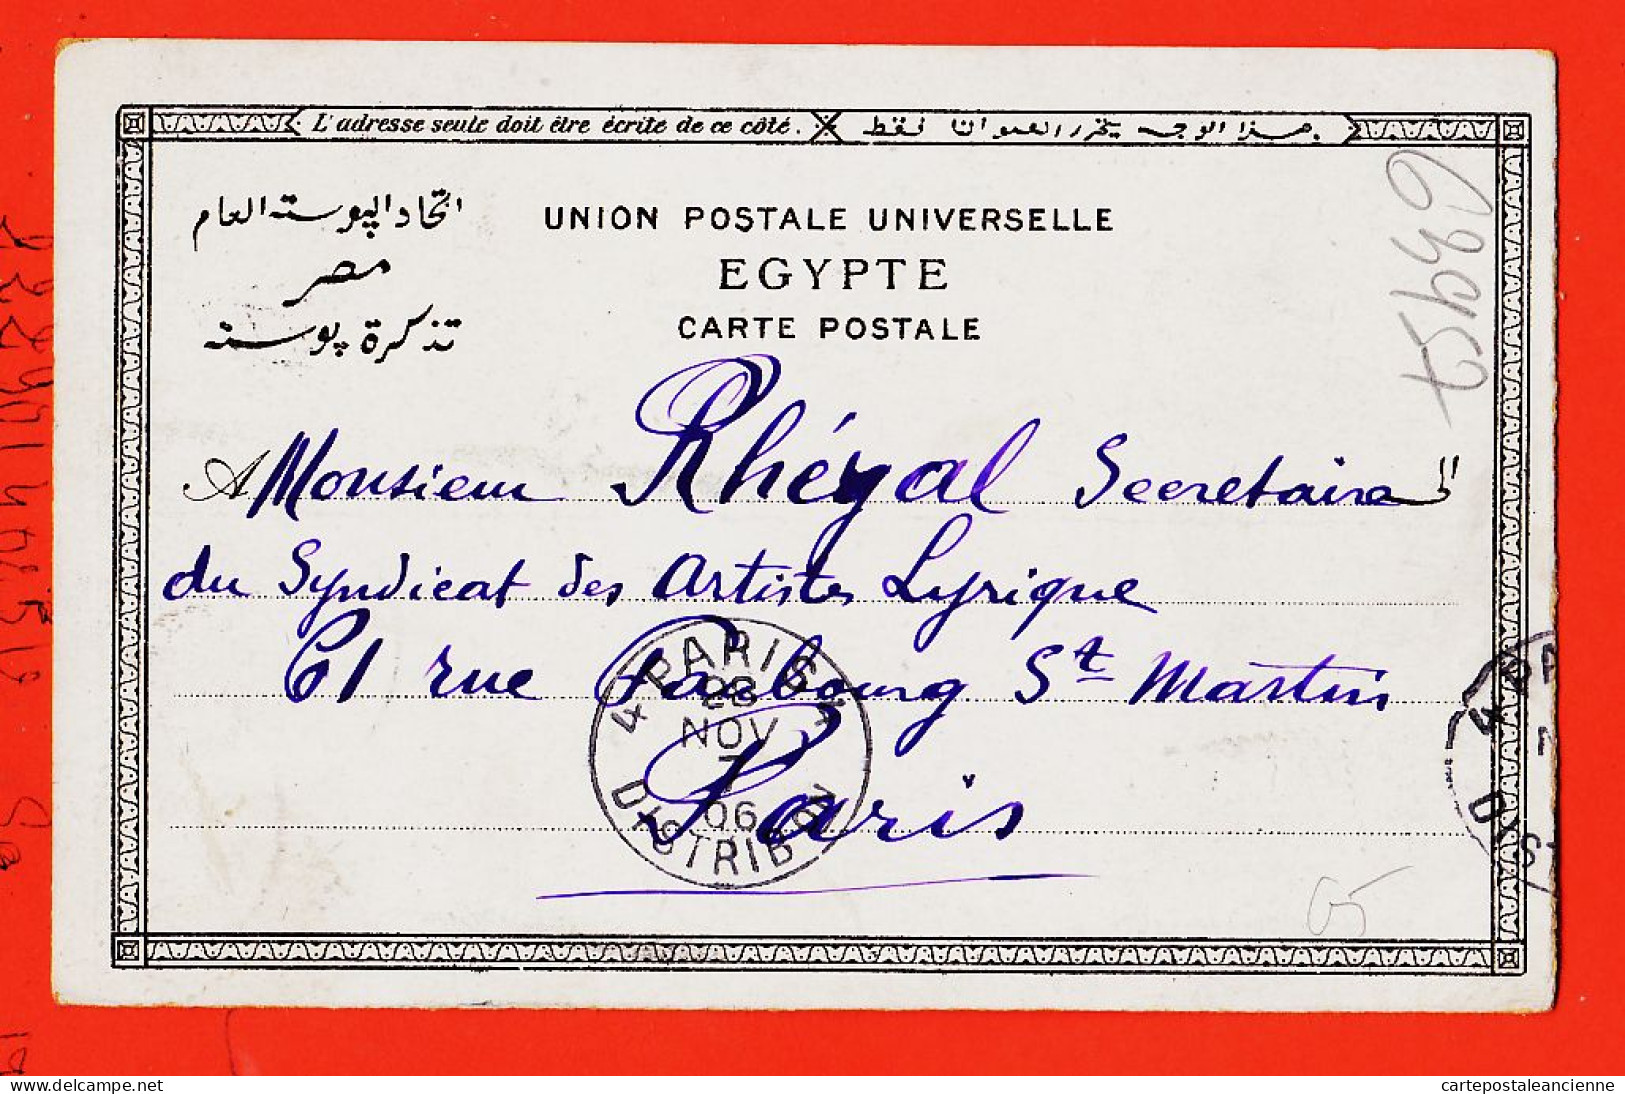 33831 / ⭐ THEBES Louxor RAMSESSEUM Ramses 1906 à RHEGAL Syndicat Artiste Lyriques 61 Faubourg St-Martin Paris - Luxor